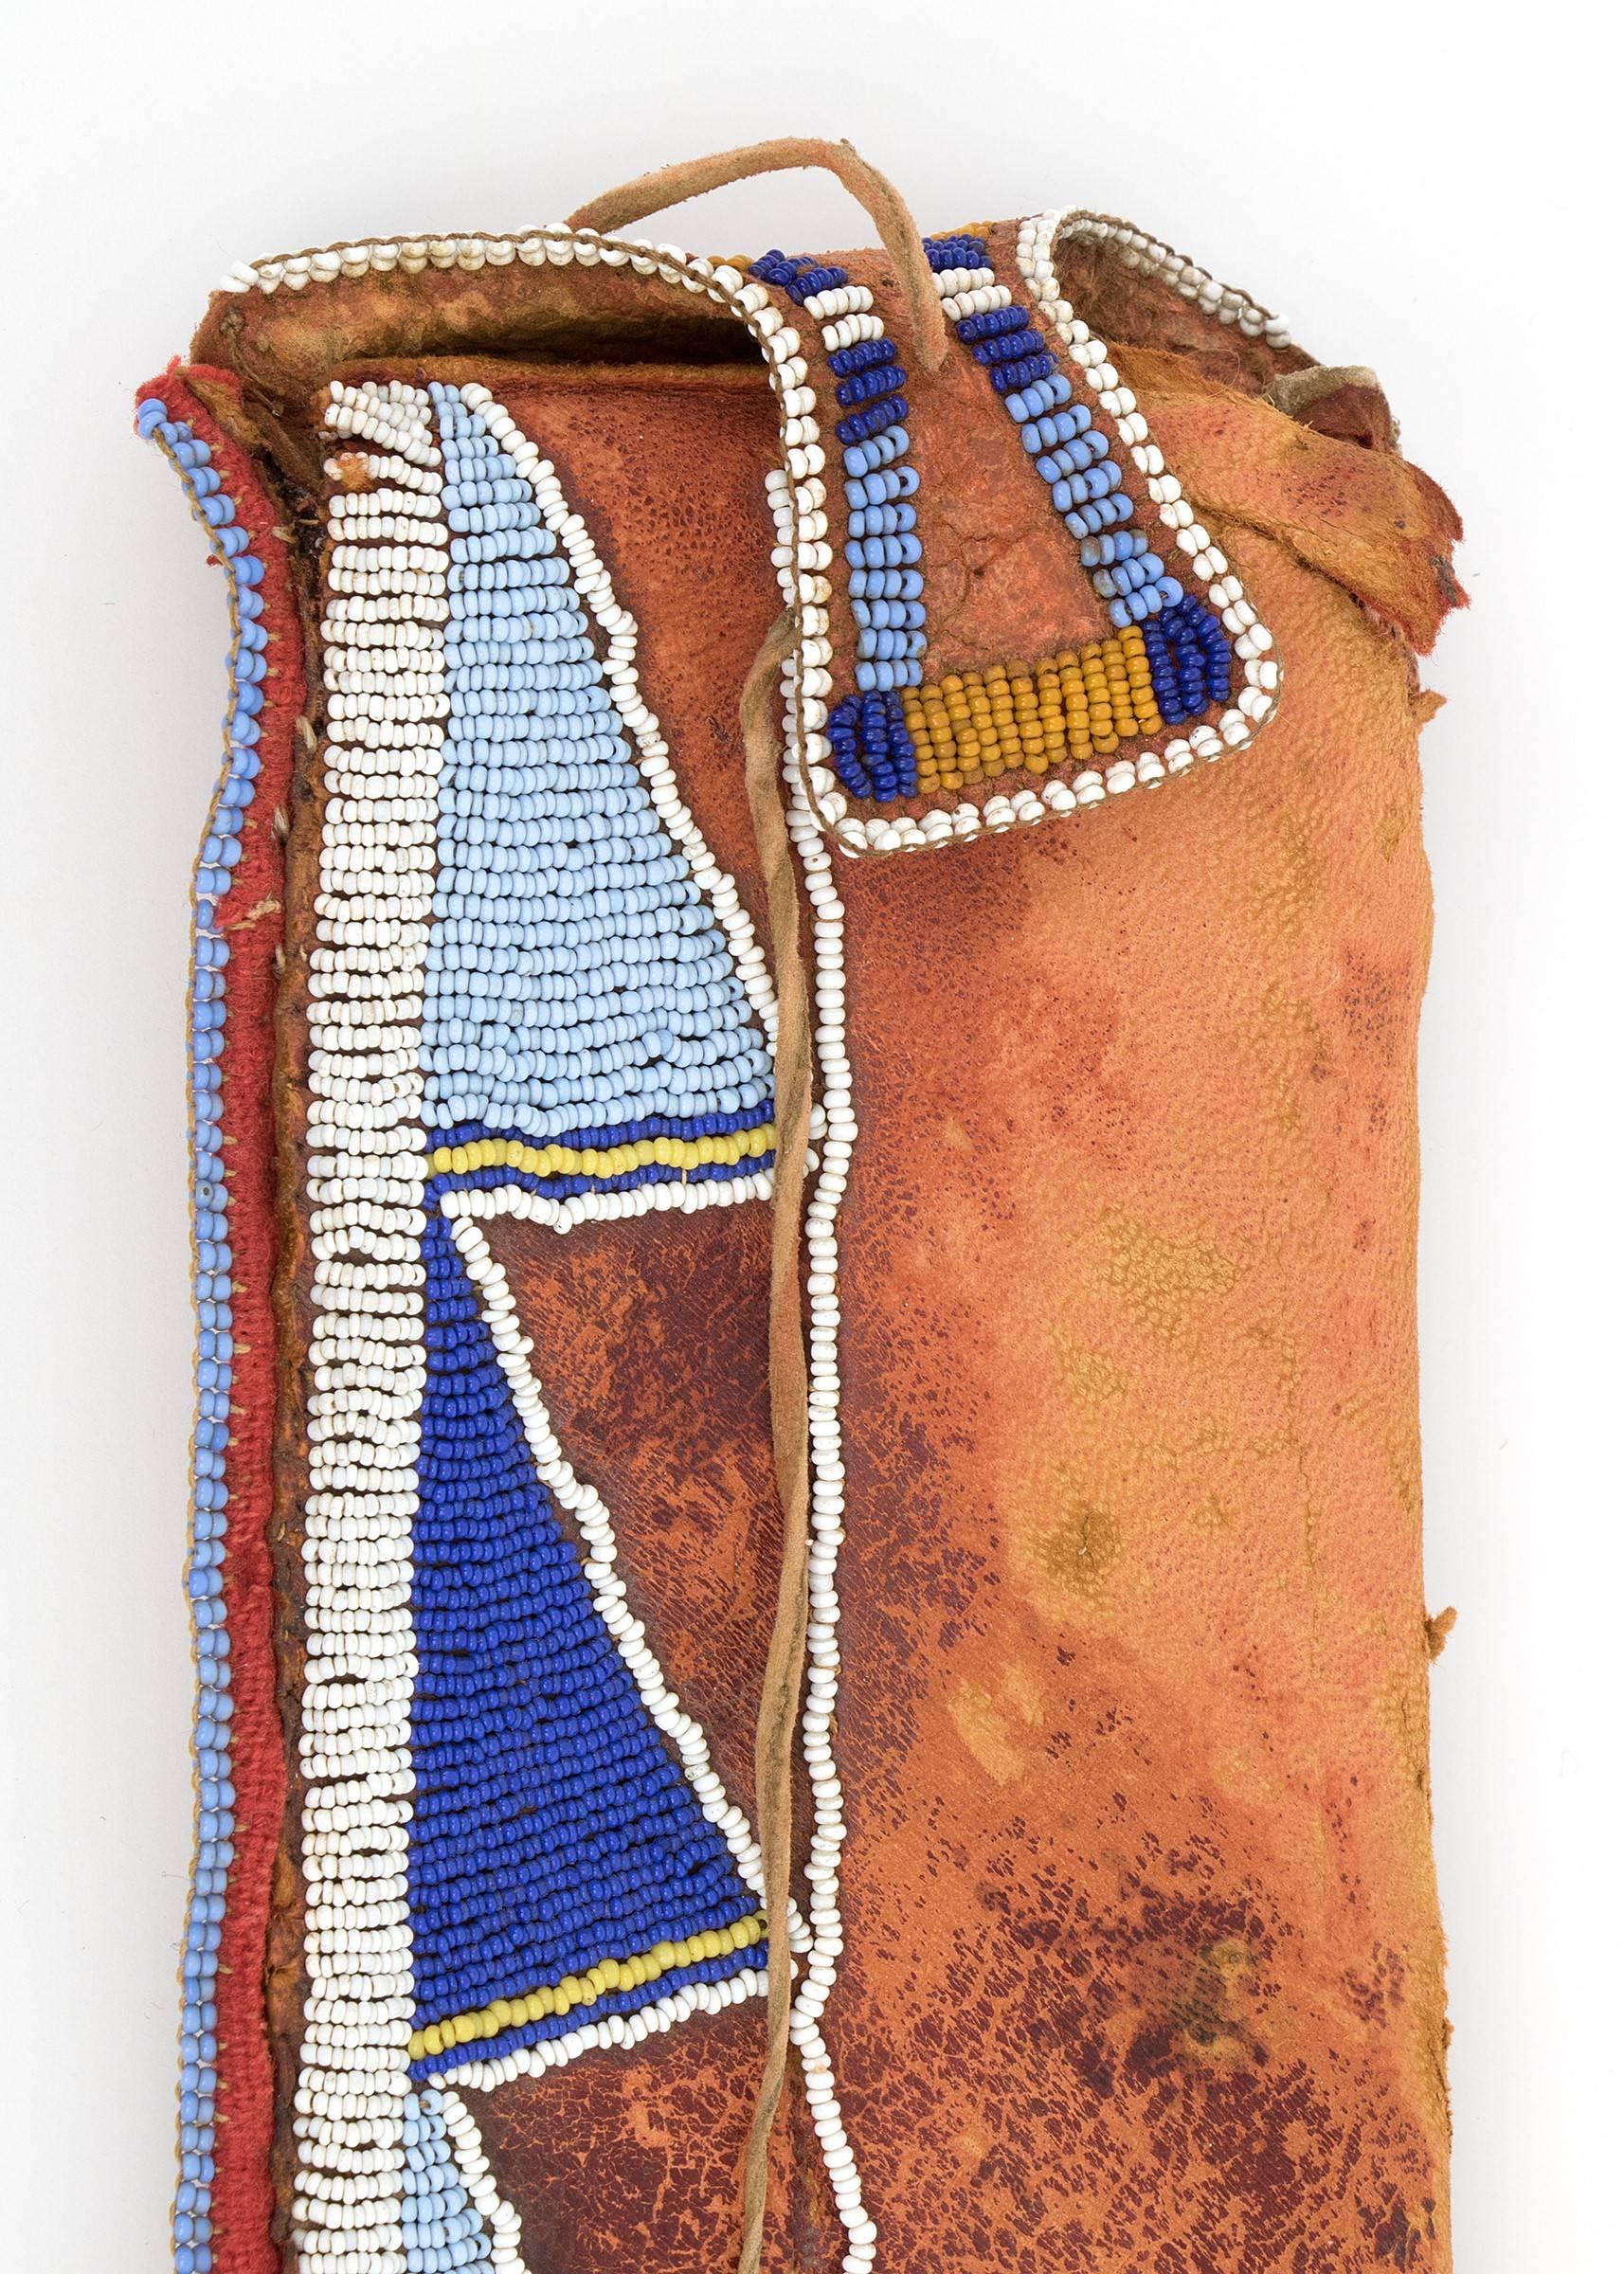 Fourreau de couteau de la période classique (ère pré-Réservation) créé vers 1870 par un artiste Crow (Indien des plaines/amérindien).  Fabriqué en cuir tanné autochtone et partiellement perlé de perles de commerce bleues, blanches et jaunes.  Il y a